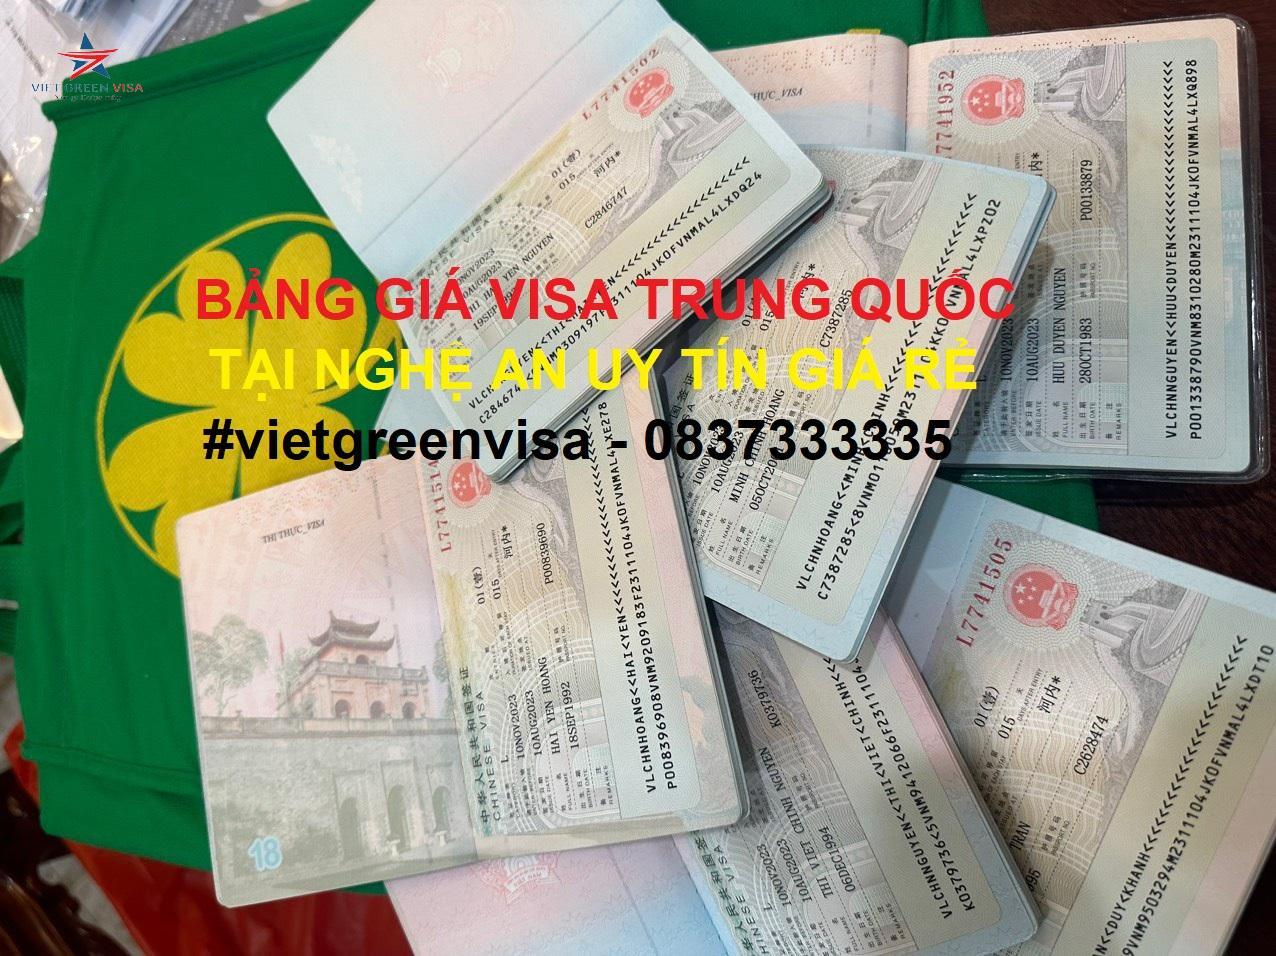 Dịch vụ xin visa Trung Quốc tại Nghệ An uy tín trọn gói